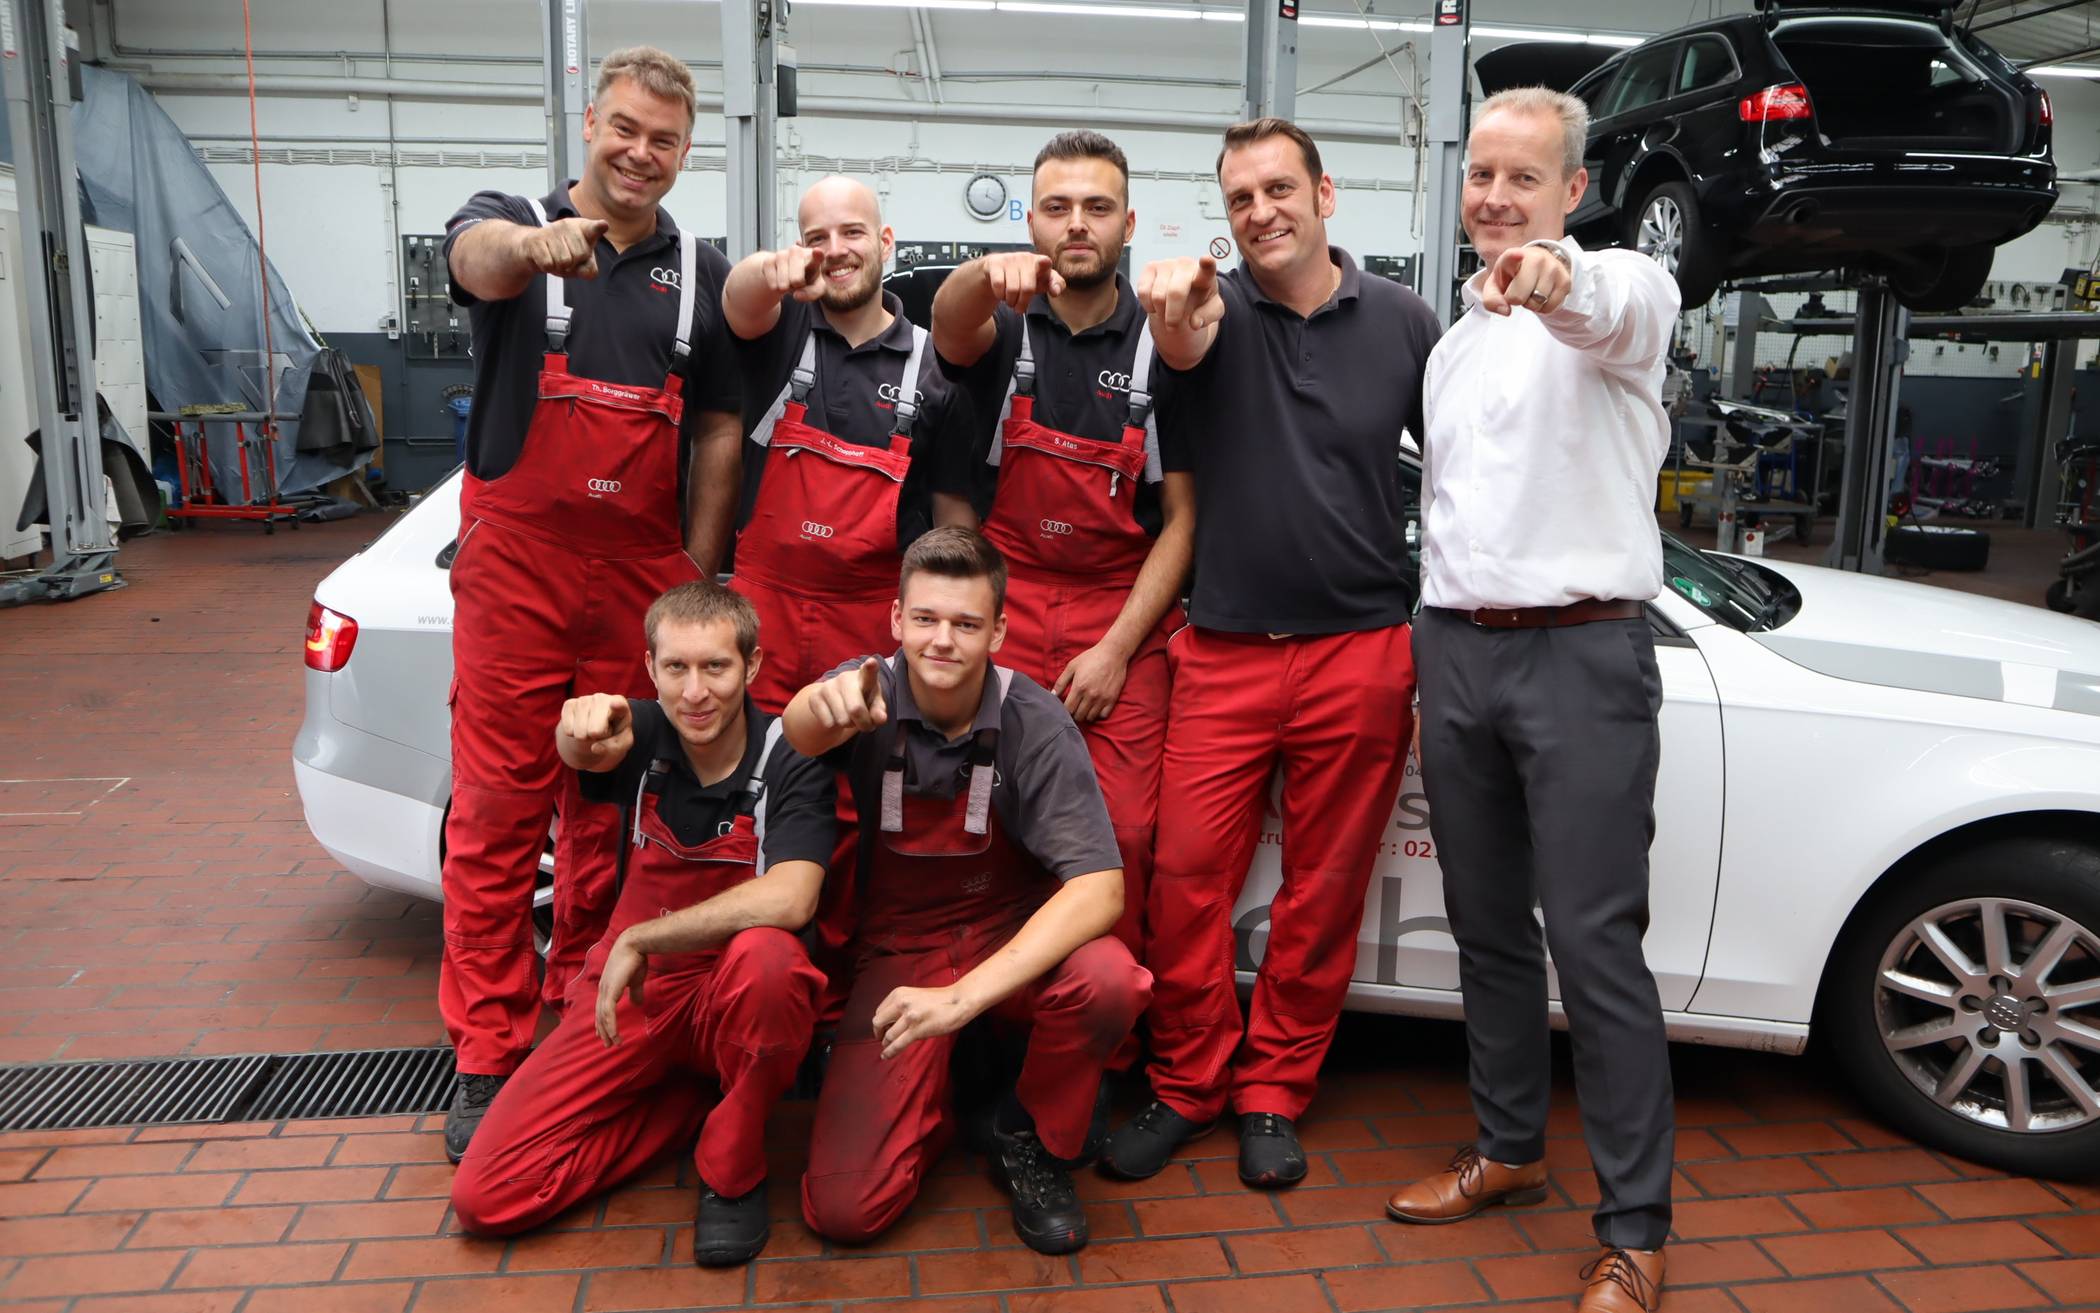  Serviceleiter Markus Klink (rechts) und seine Mitarbeiter möchten gerne einen neuen Kollegen oder eine neue Kollegin begrüßen. Audi Gottfried Schultz ruft auf: „Werden Sie Teil dieses Teams!“ 